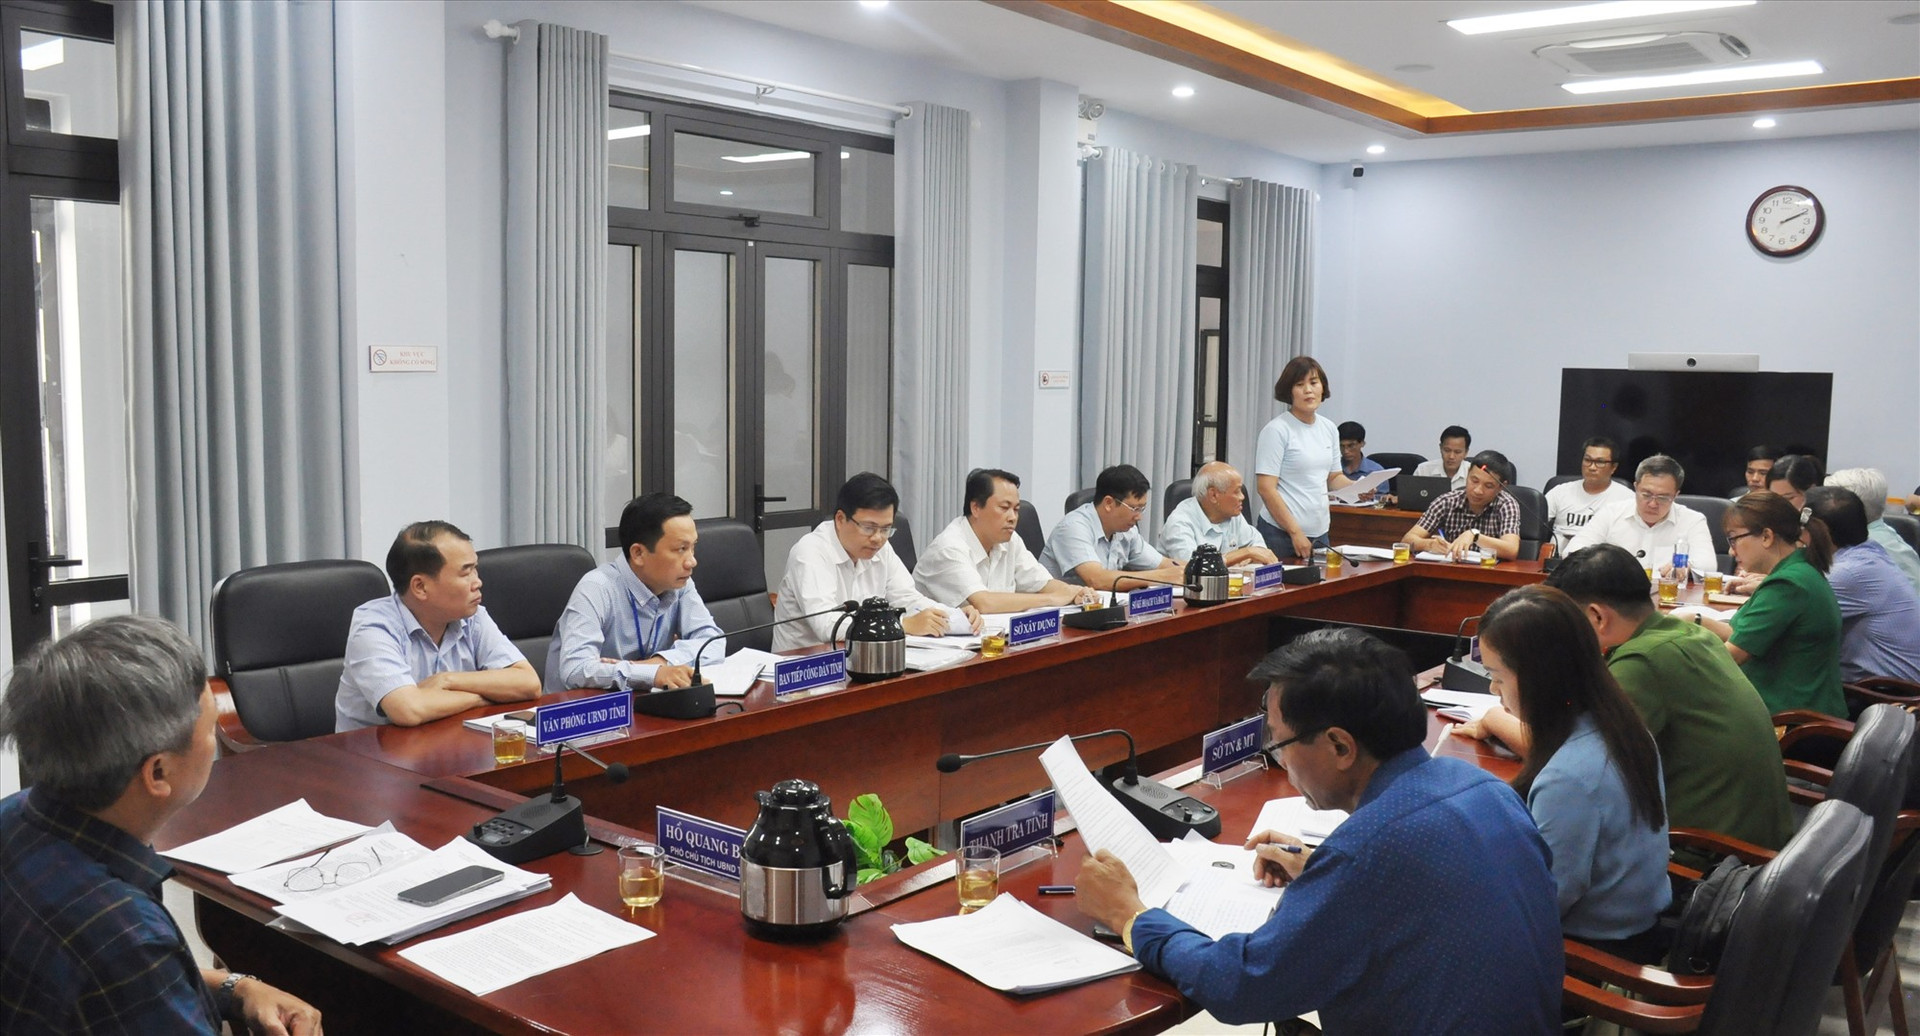 Phó Chủ tịch UBND tỉnh Hồ Quang Bửu tiếp người đại diện khoảng 300 khách hàng mua đất nền dự án nhà ở thu nhập thấp Điện Nam - Điện Ngọc của chủ đầu tư Công ty STO. Ảnh: P.V